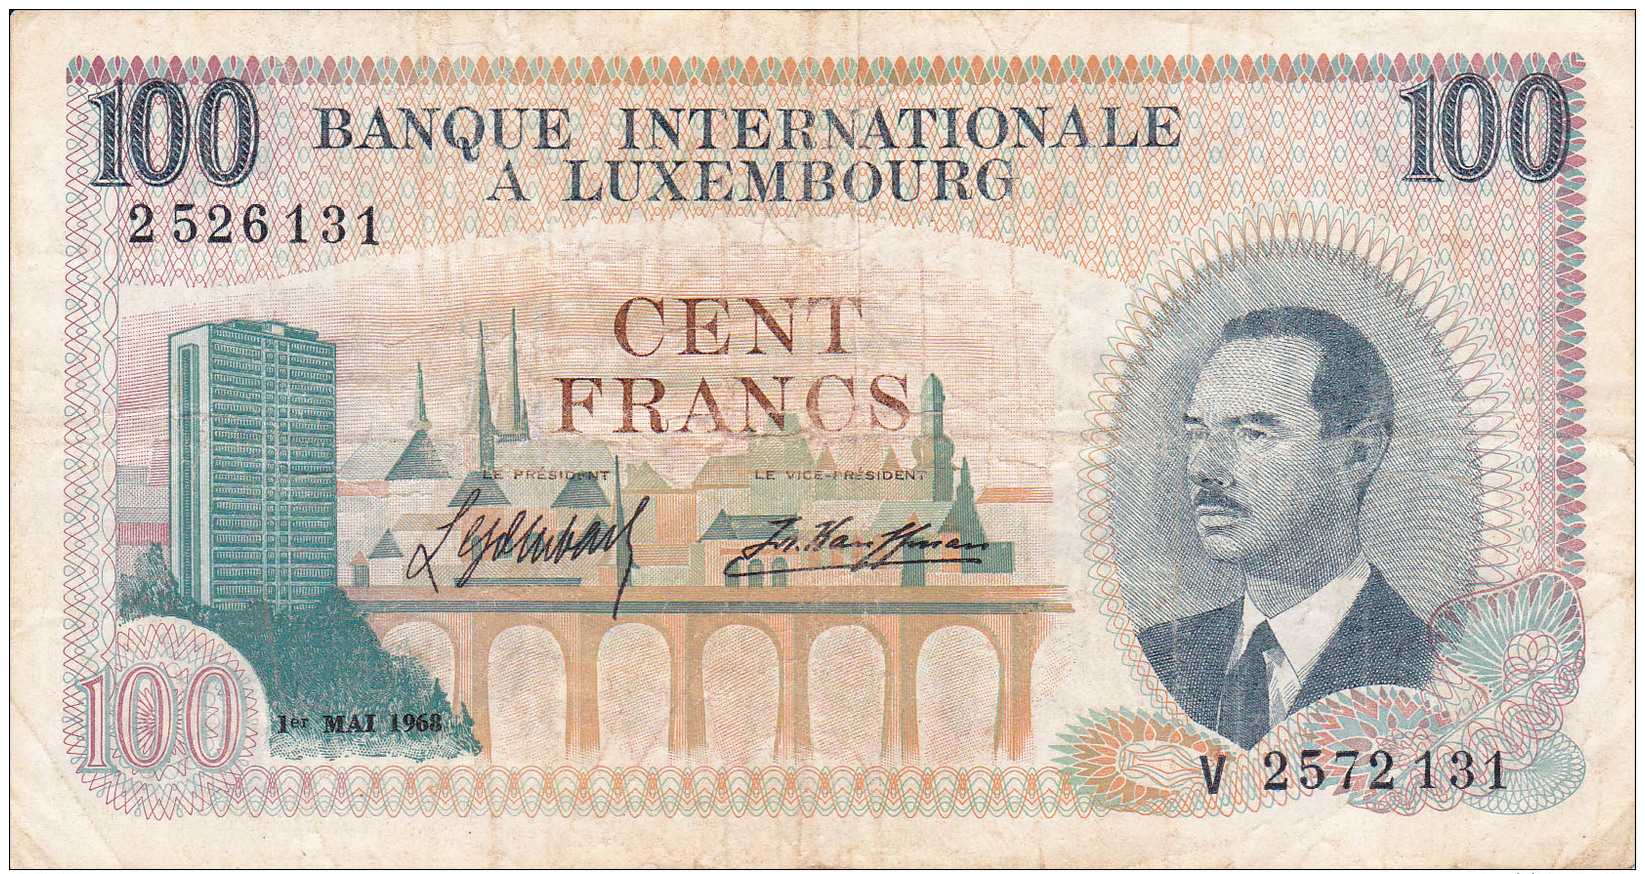 LUXEMBOURG - BILLET DE 100 FRANCS - 1968 - Luxemburgo